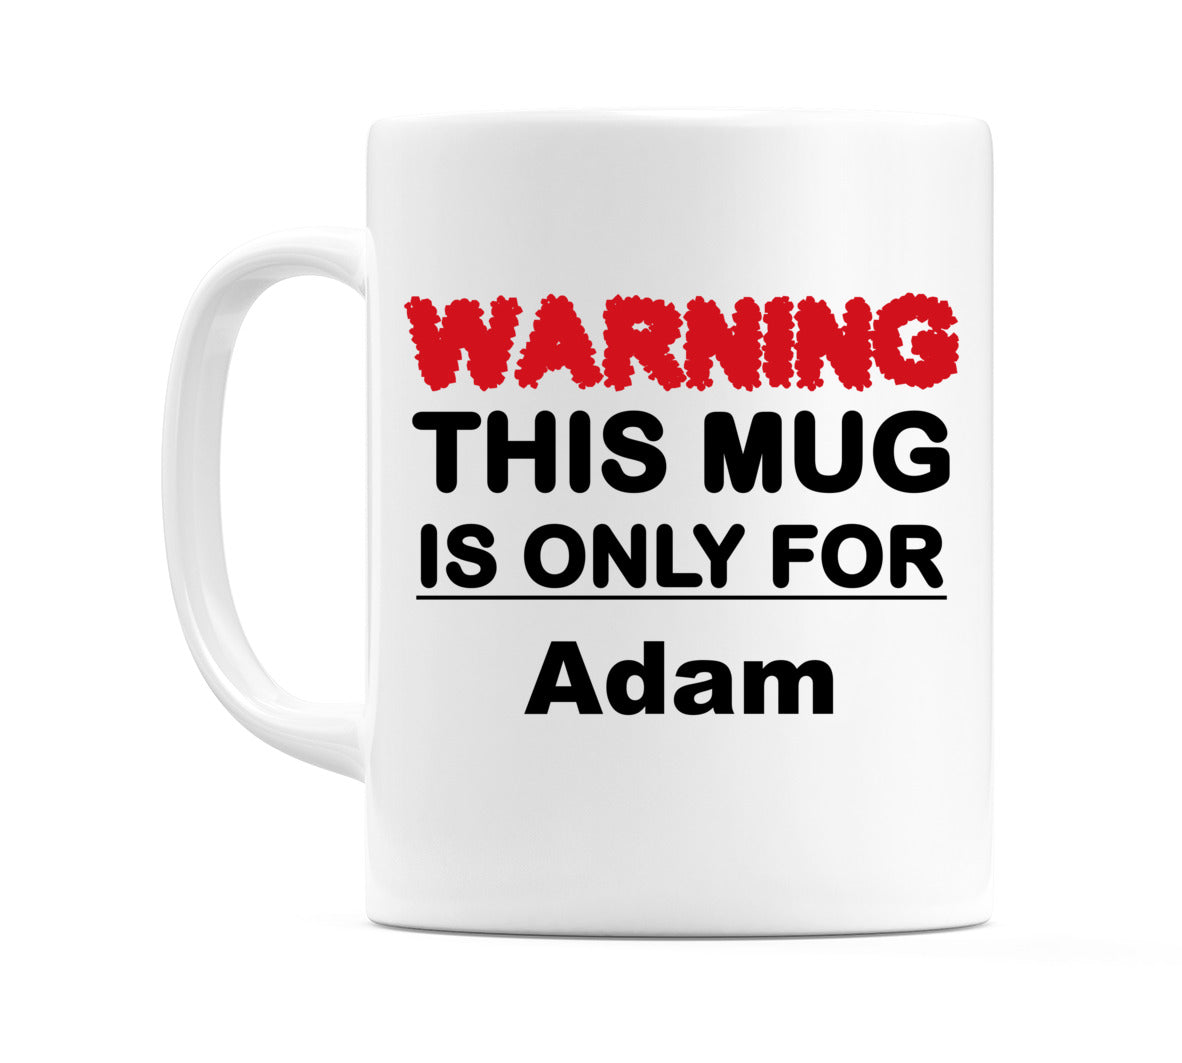 Warning This Mug is ONLY for Adam Mug